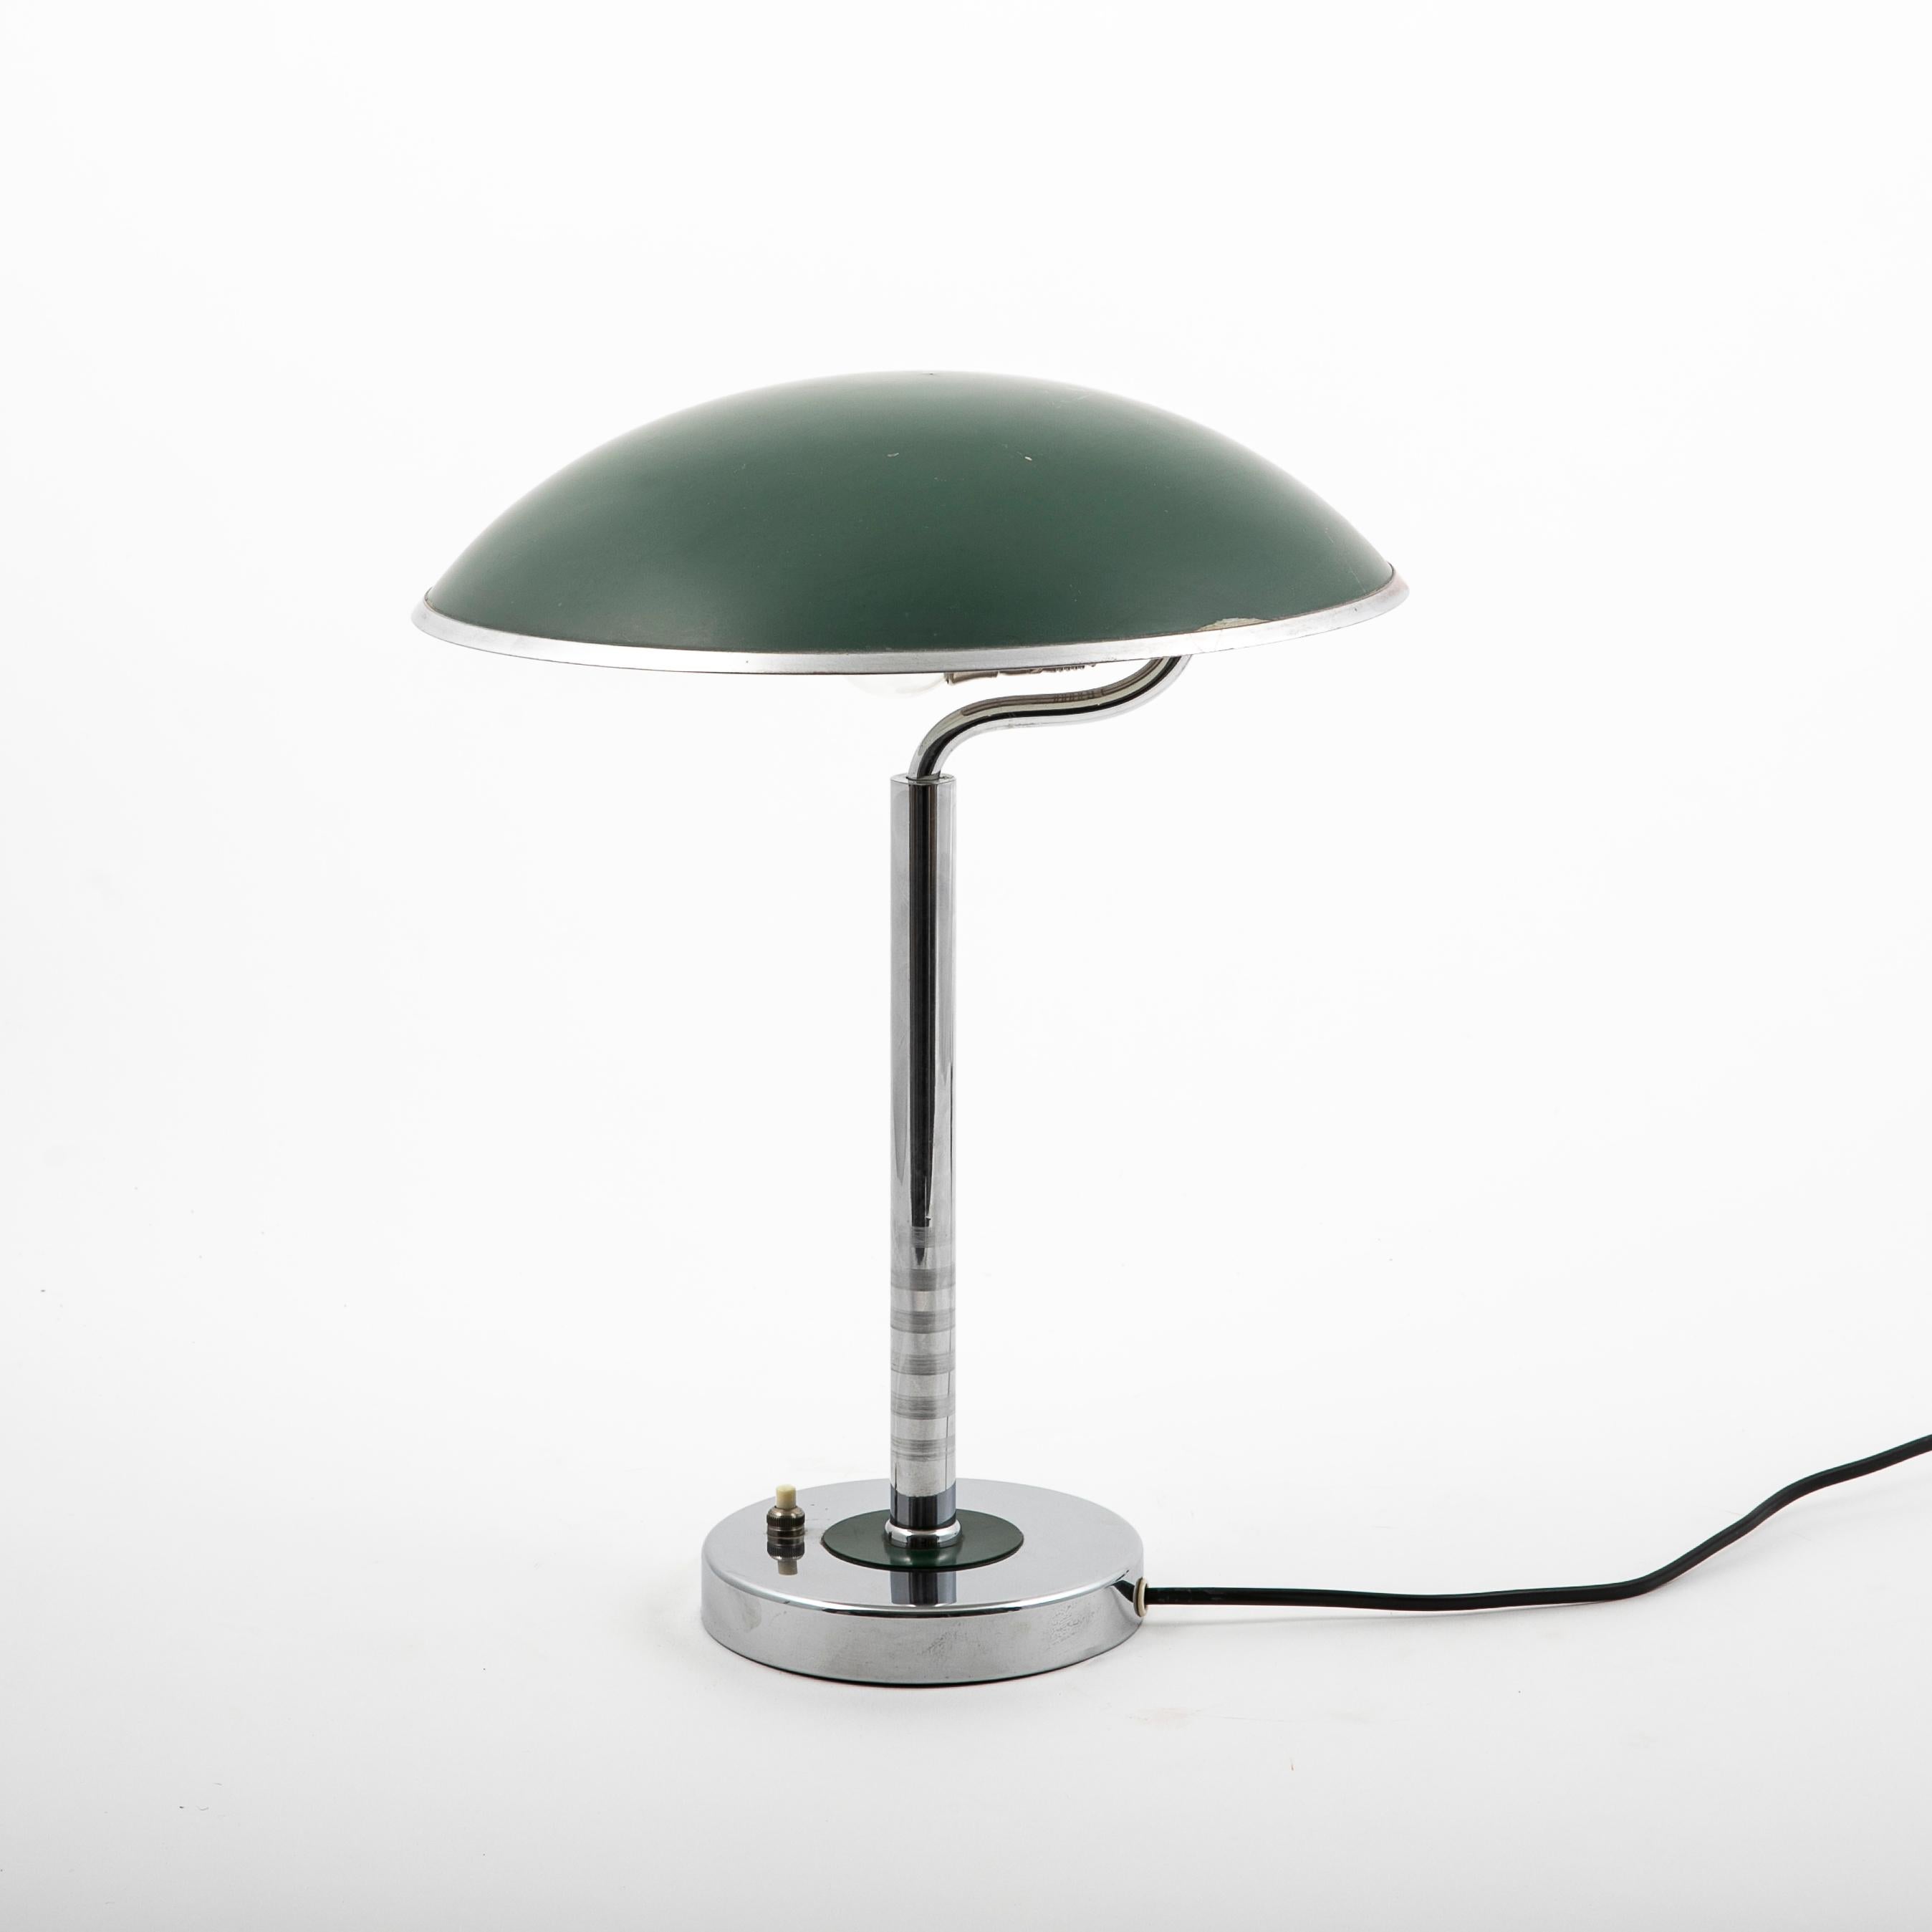 Une lampe de bureau suédoise art déco en laiton chromé.
Le style Bauhaus.
Abat-jour sphérique vert peint en blanc à l'intérieur.
Diamètre de l'abat-jour : 29 cm.
Base avec anneau vert à la tige. Interrupteur marche/arrêt à la base.
État original et